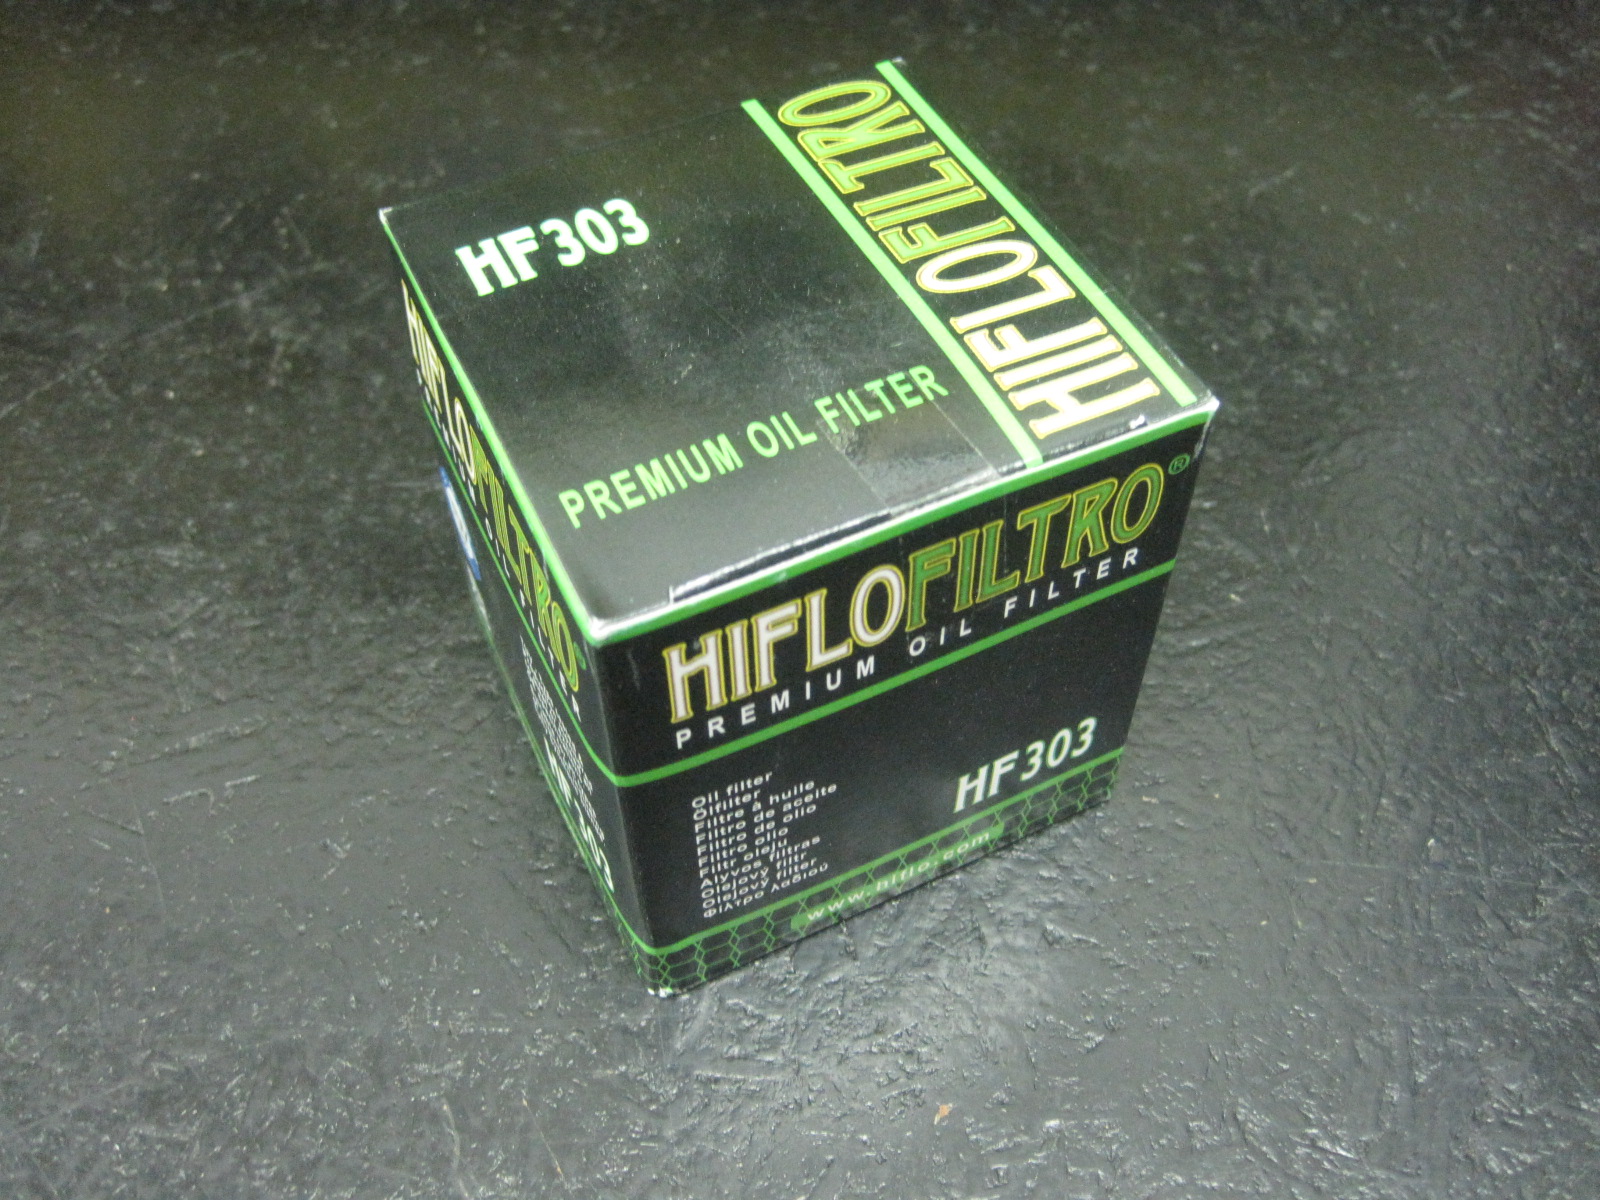 Hi Flo oil filter